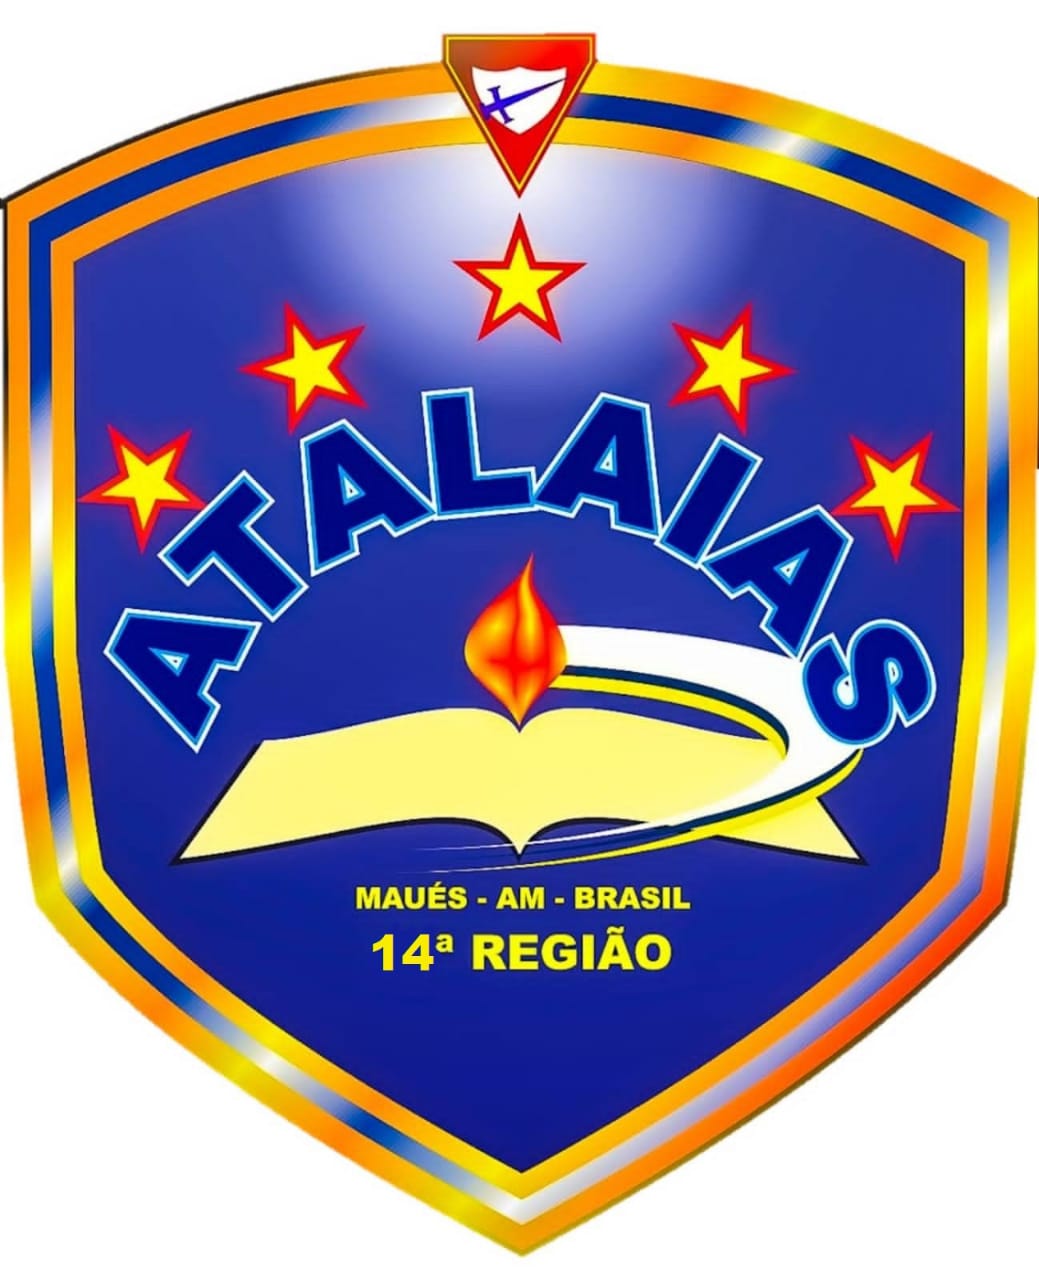 ATALAIAS - MAUS II